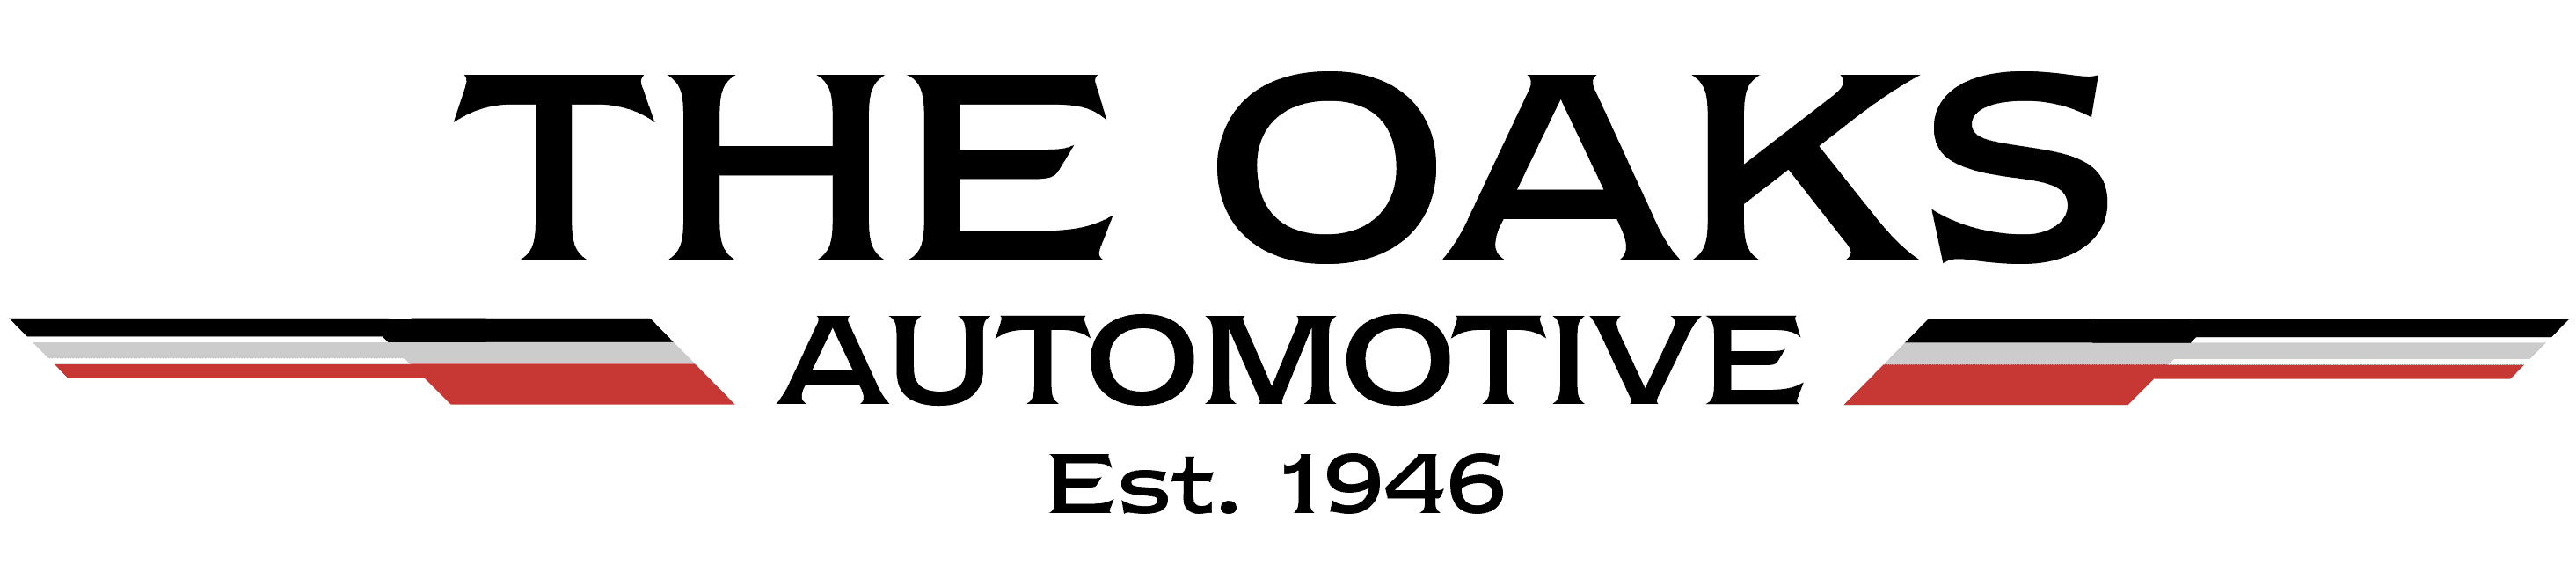 The Oaks Automotive Centre